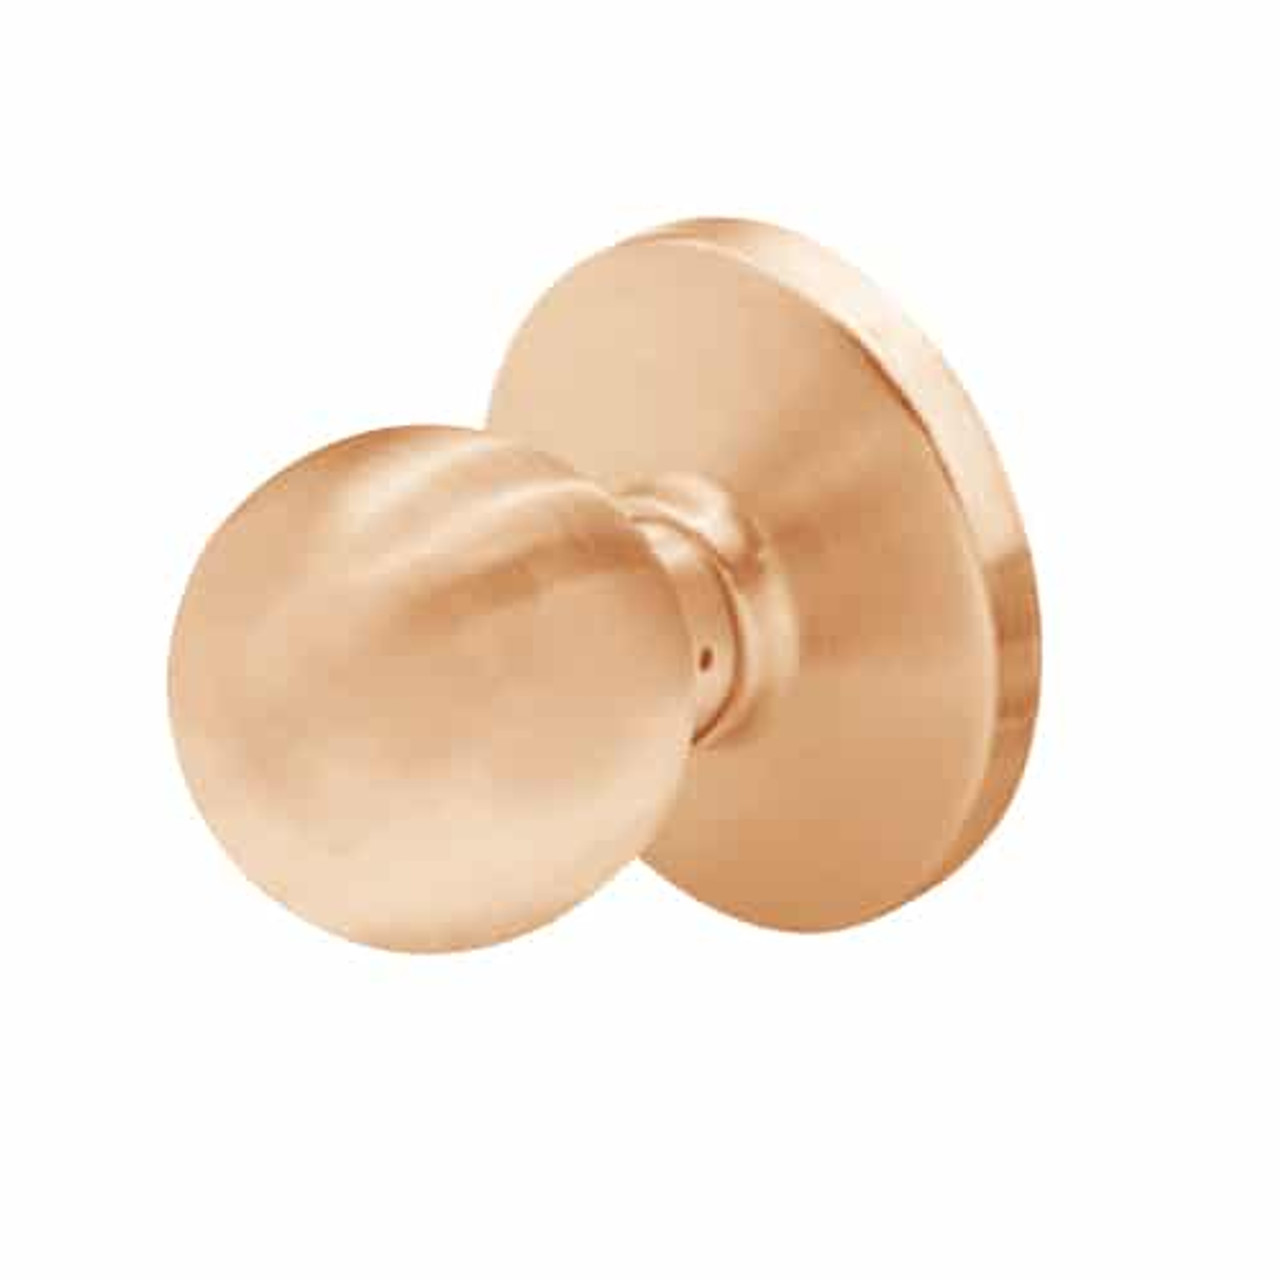 6K20N4DS3611 Best 6K Series Passage Medium Duty Cylindrical Knob Locks with Round Style in Bright Bronze